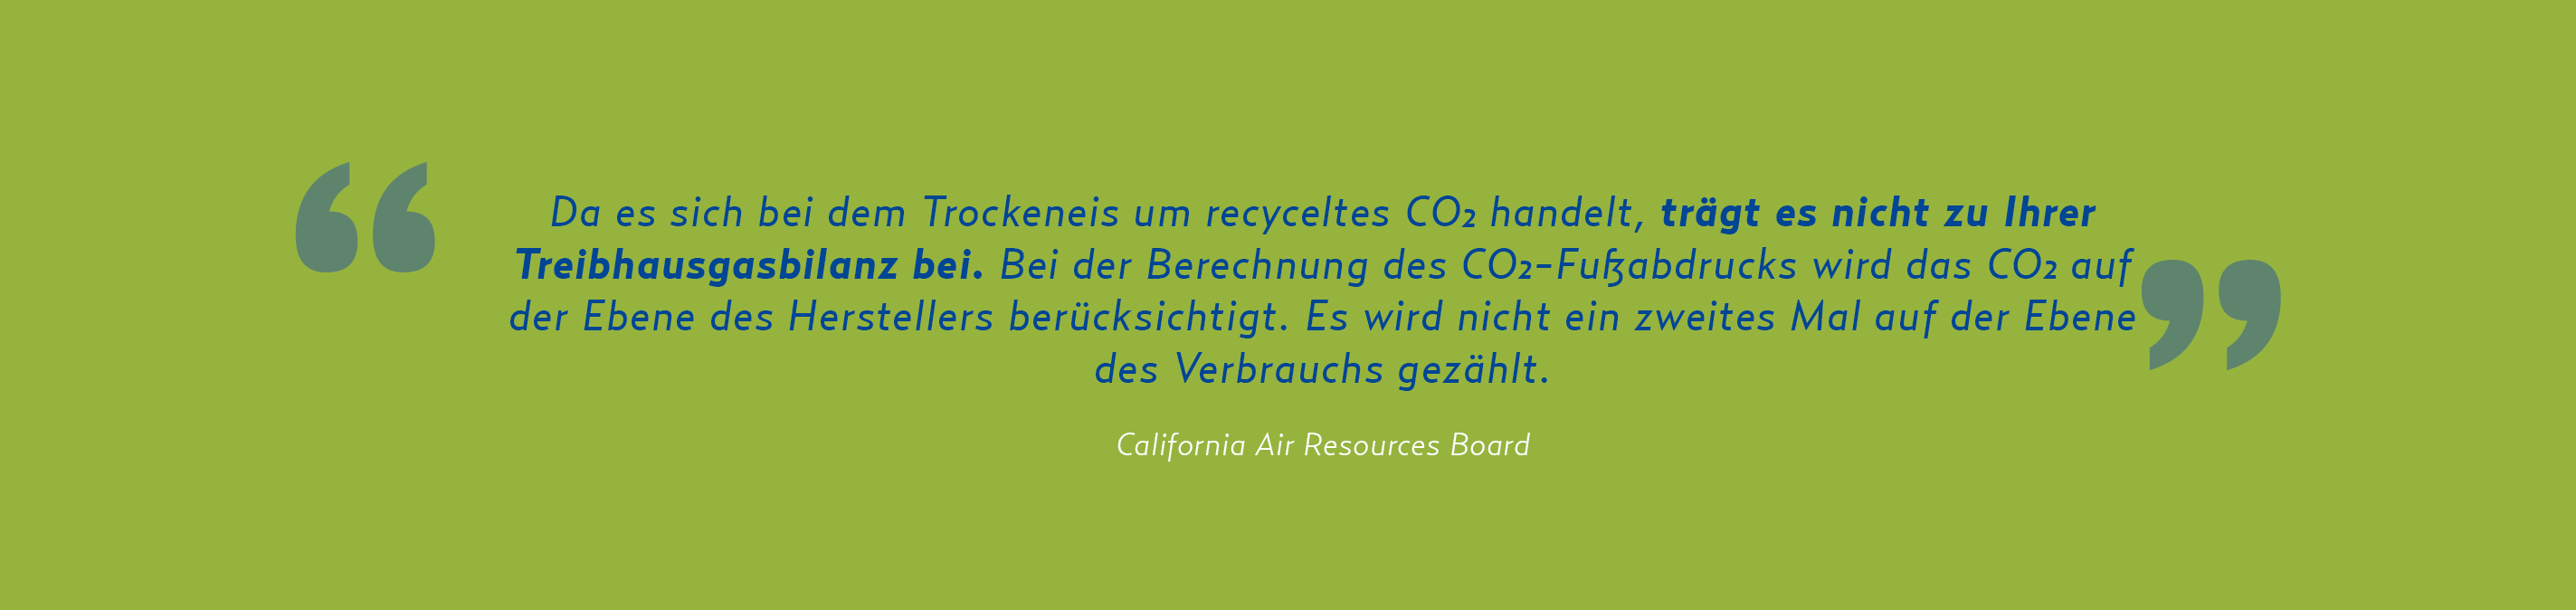 Umweltverträglichkeit der Trockeneisquote - California Air Resources Board